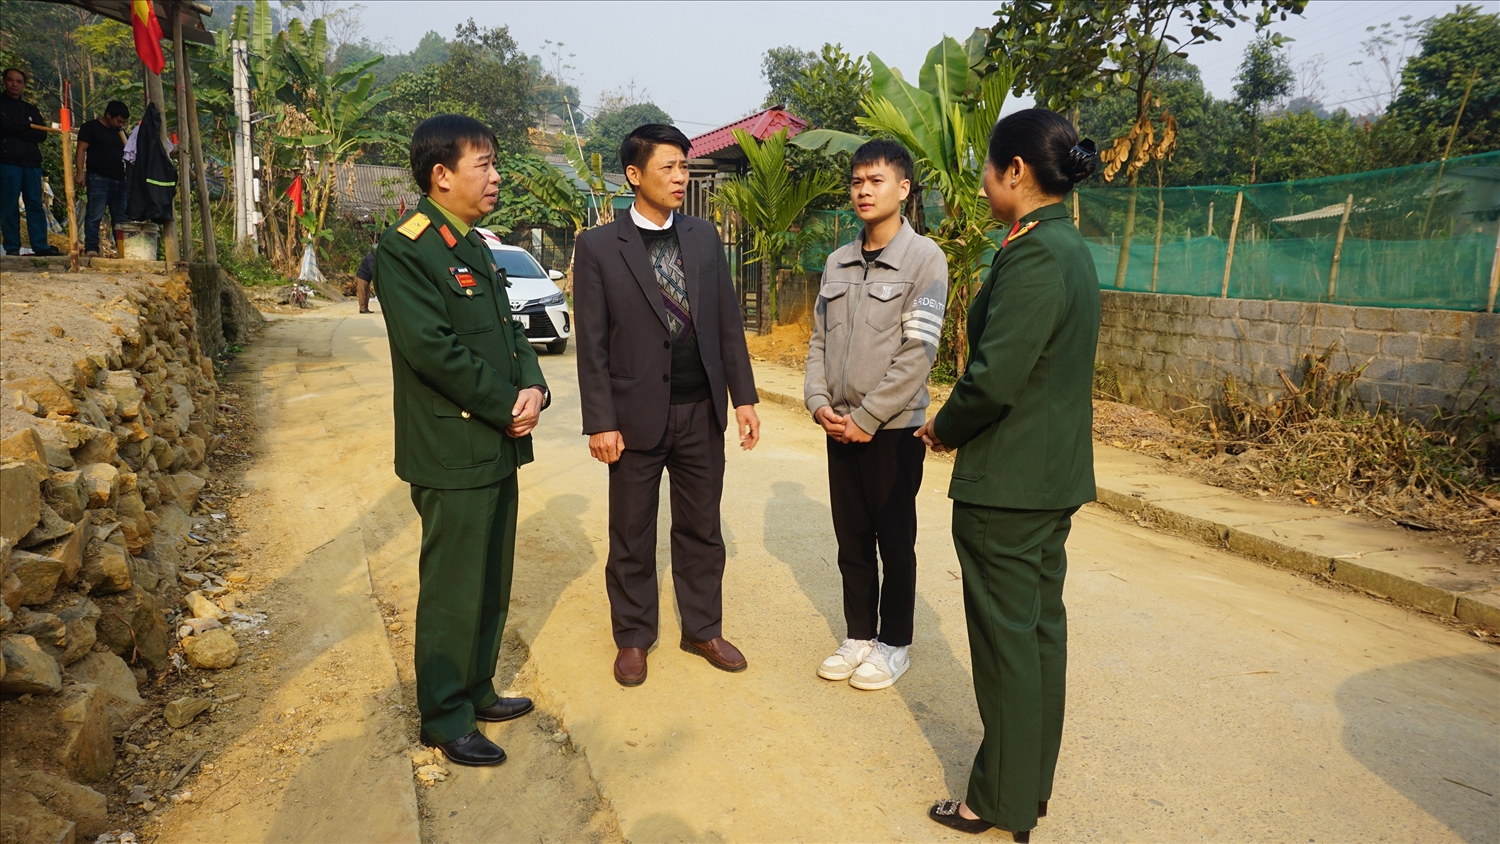 Ngày 10/2, các địa phương trên địa bàn tỉnh Lào Cai sẽ tiến hành bàn giao tân binh cho các đơn vị nhận quân 